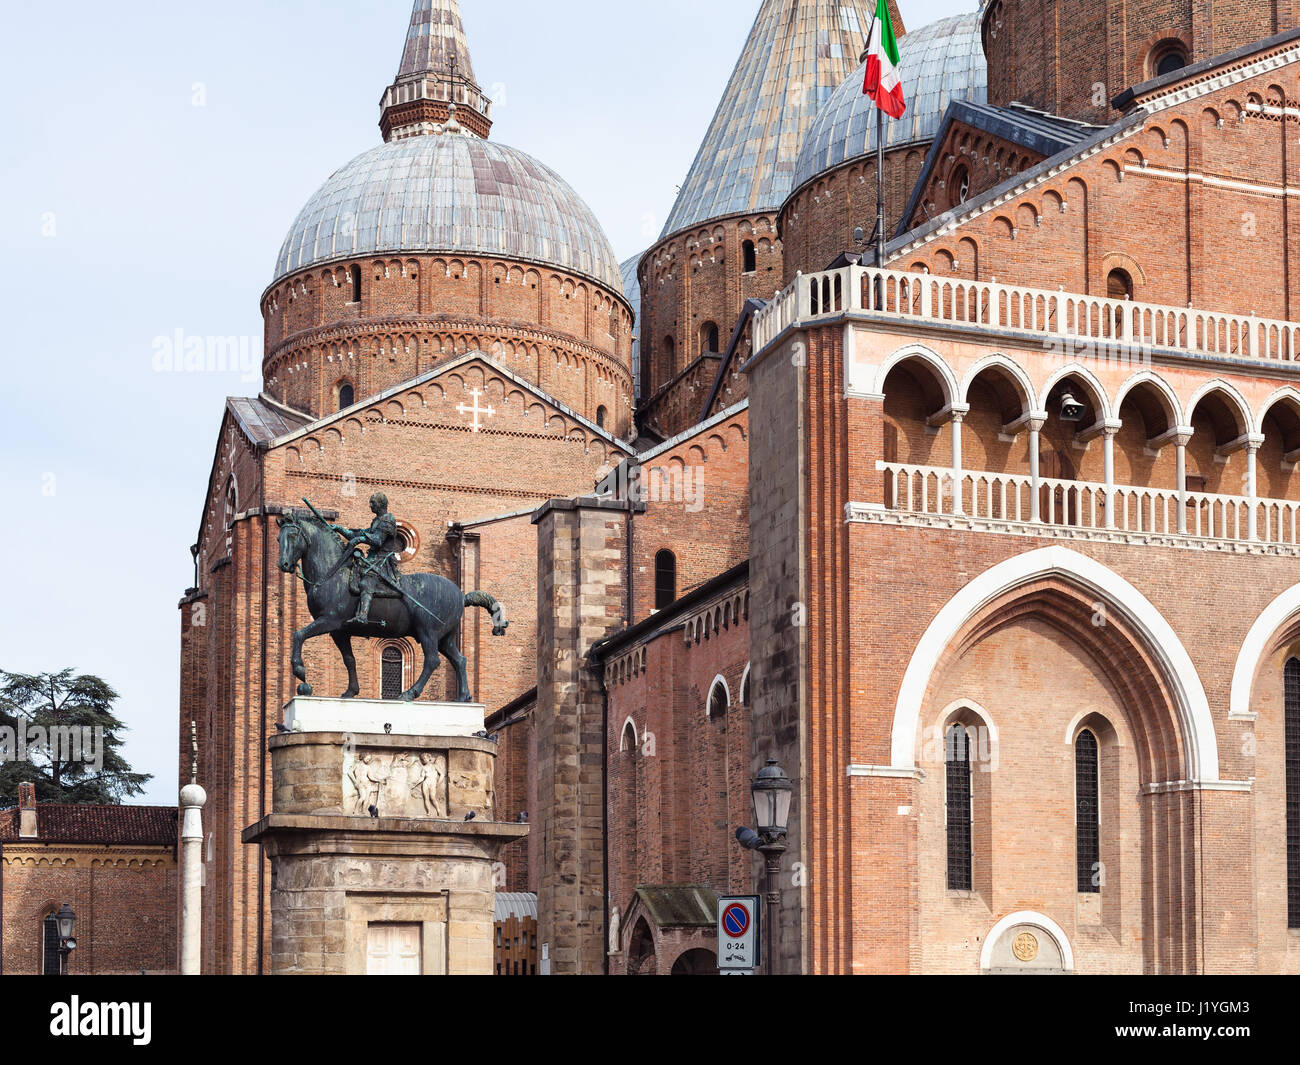 Reisen nach Italien - Blick auf das Equestrian Statue des Gattamelata von Donatello und Basilika des Heiligen Antonius von Padua am Piazza del Santo in Padua Stadt Stockfoto